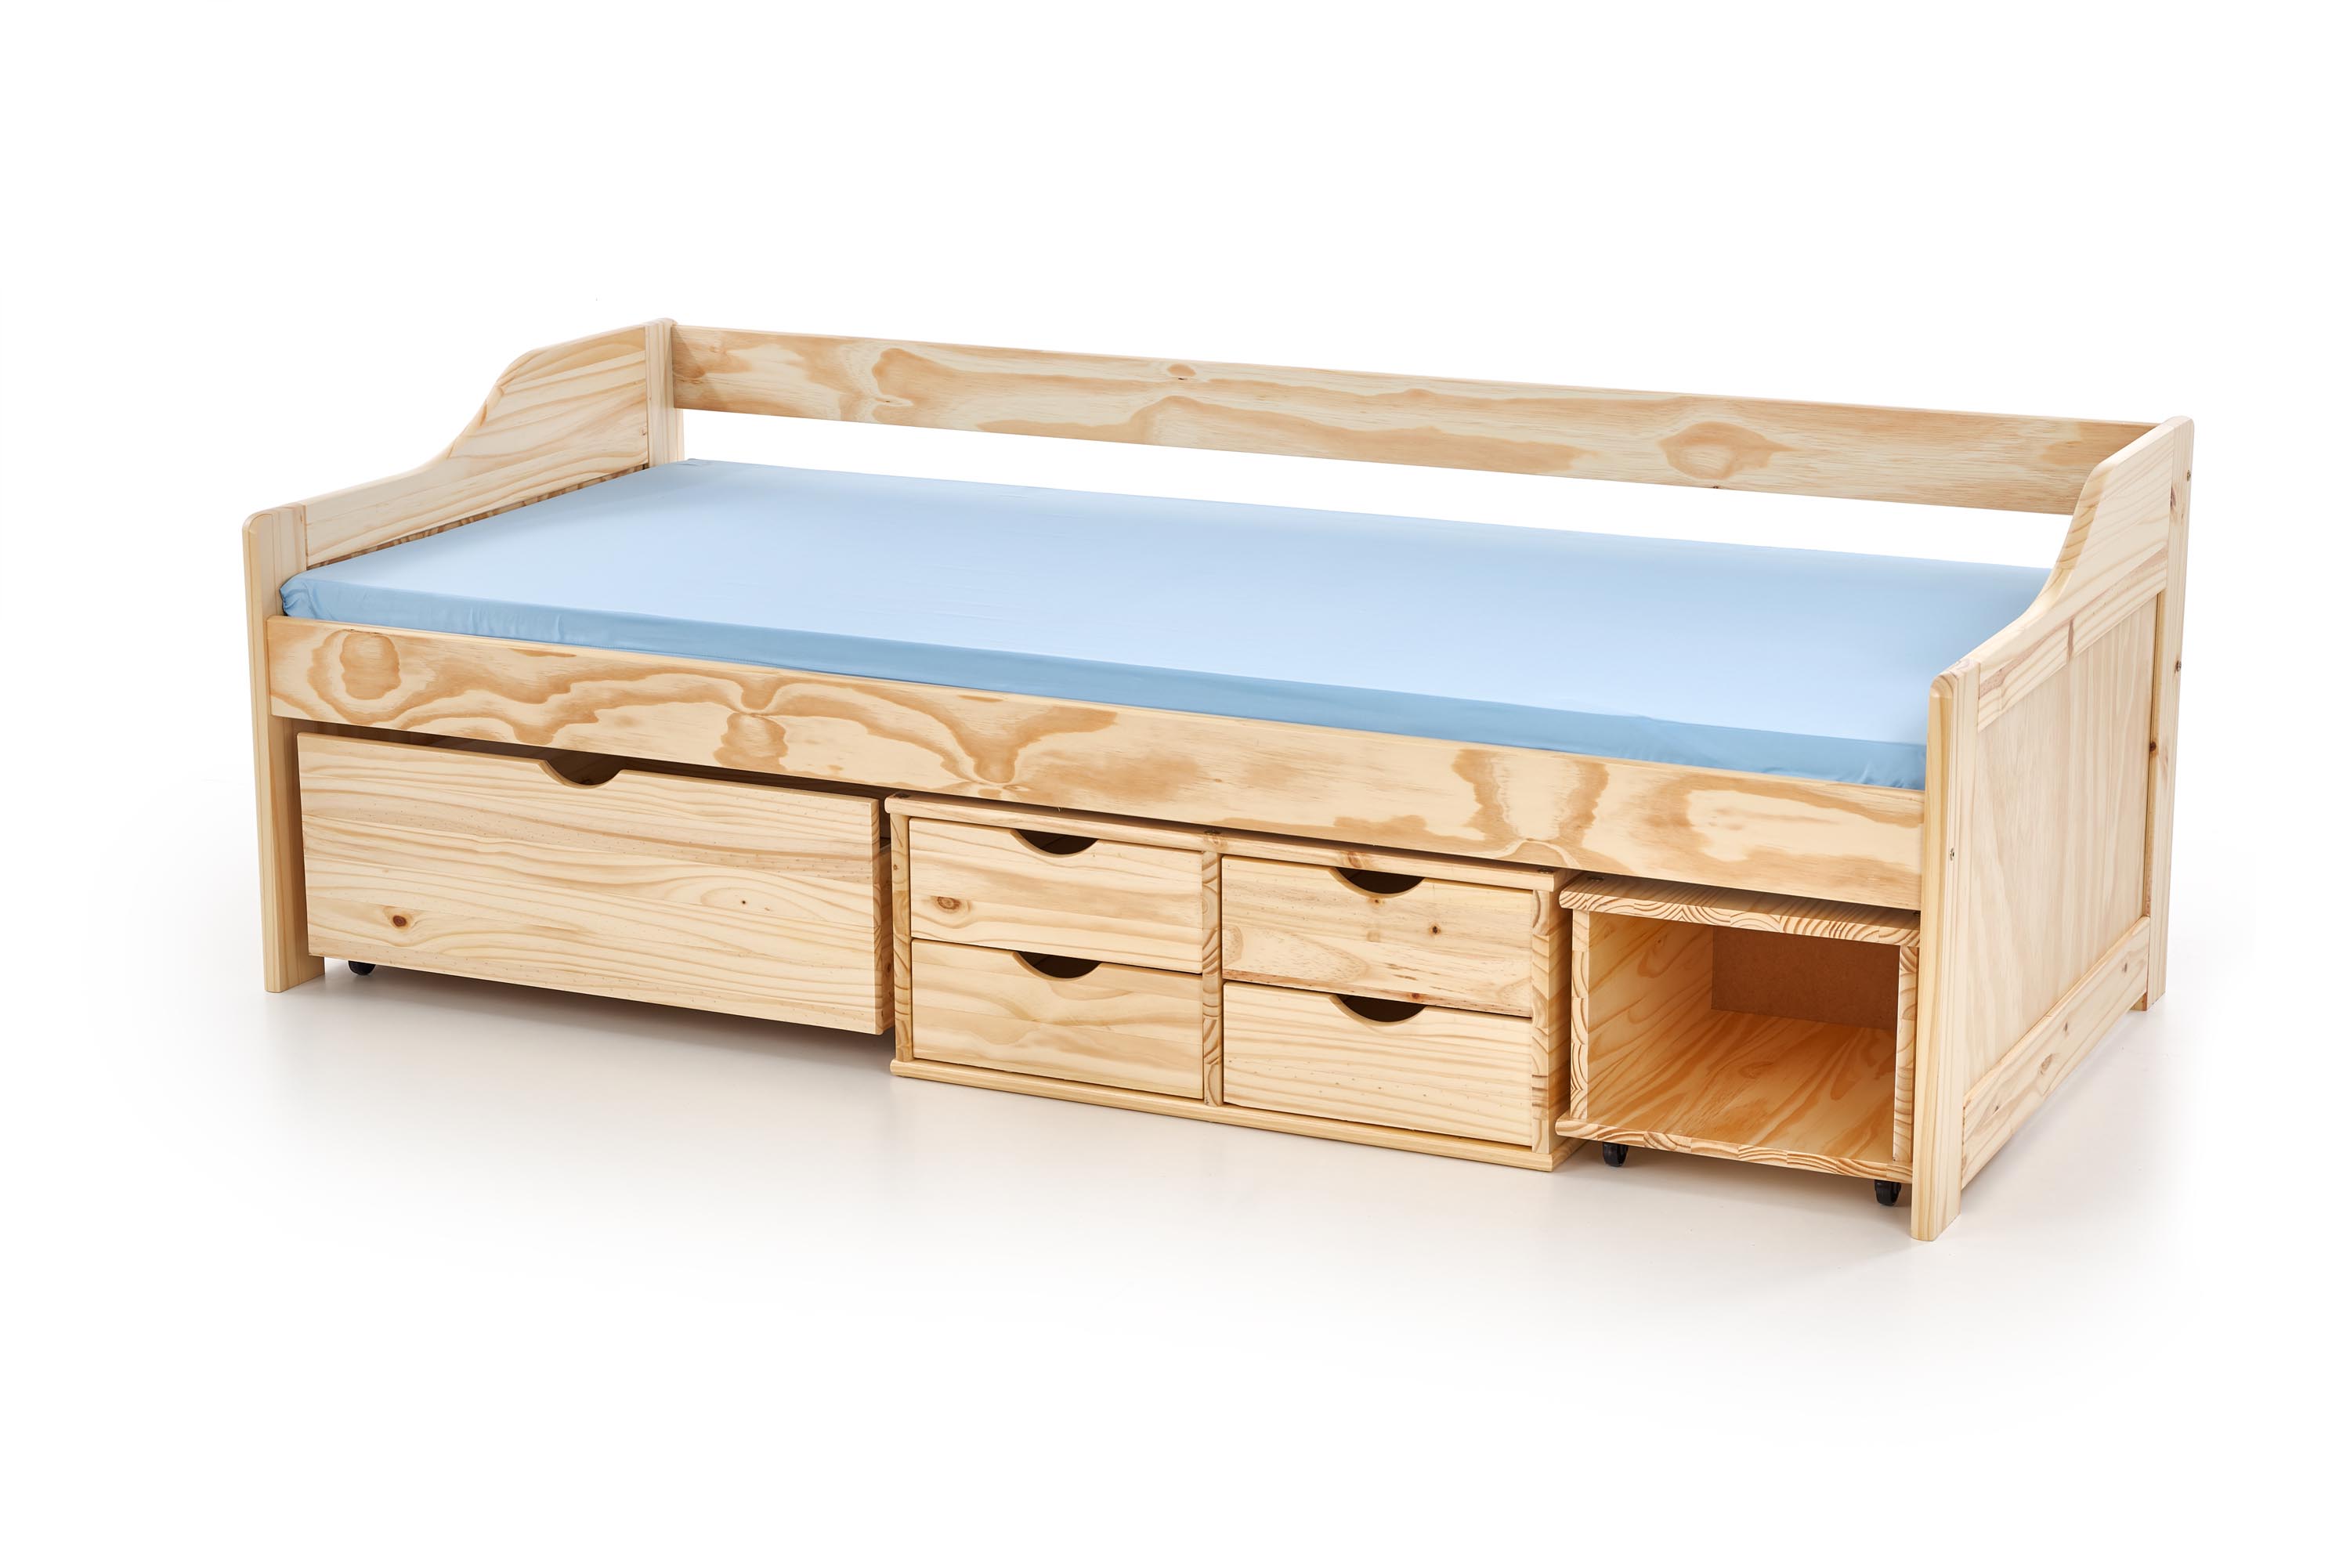 Drevená detská posteľ so zásuvkami Maxima 2 90x200 - borovica drevená Posteľ pre mládež so zásuvkami maxima 2 90x200 - Borovica